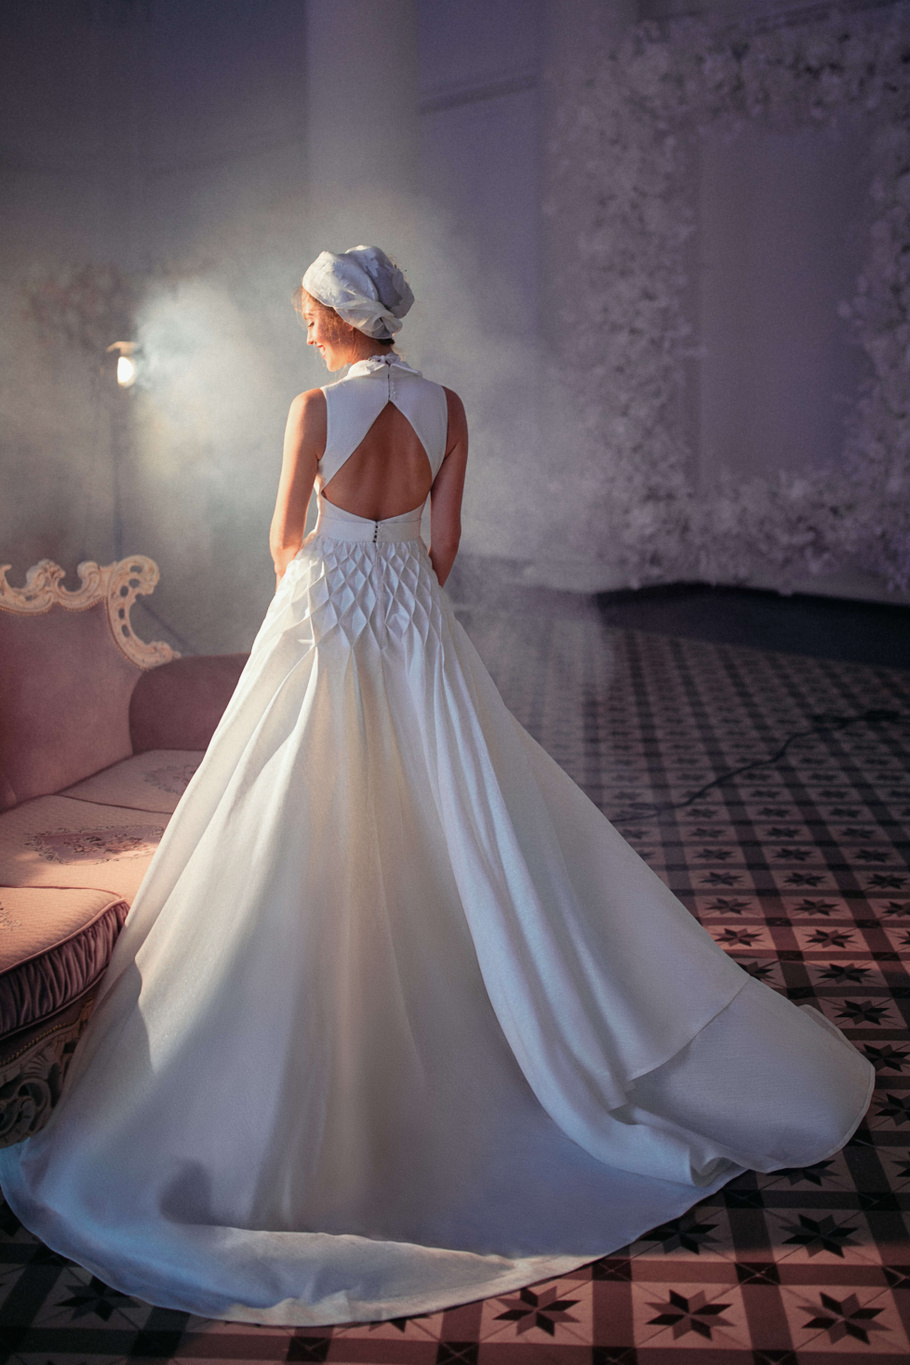 Купить свадебное платье «Астриа» Бламмо Биамо из коллекции Свит Лайф 2021 года в Нижнем Новгороде